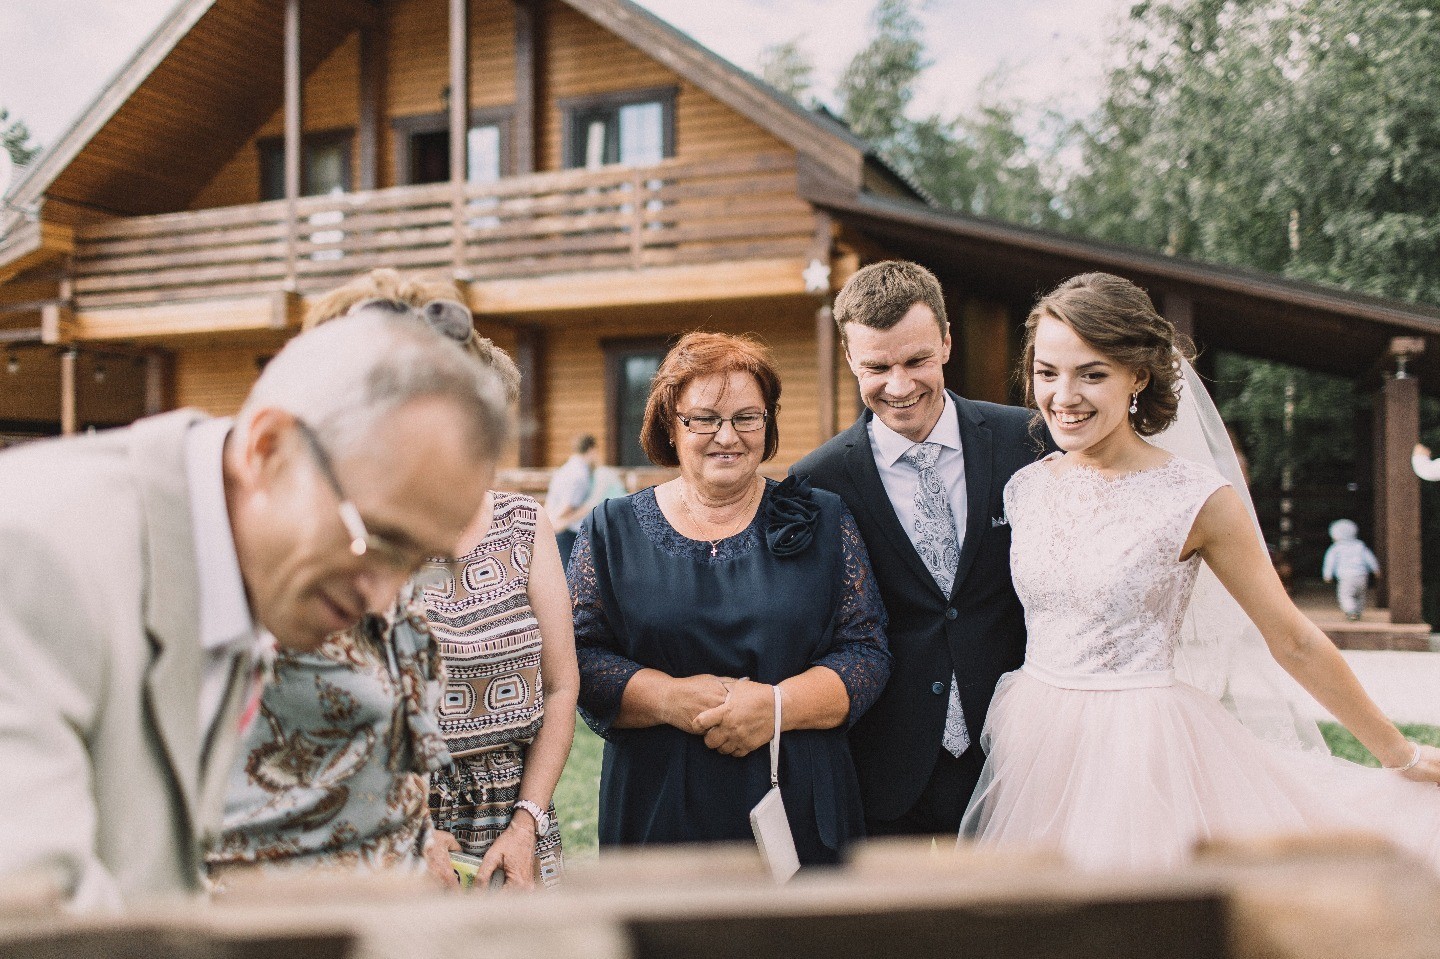 Уютно и по-домашнему: свадьба в стиле рустик